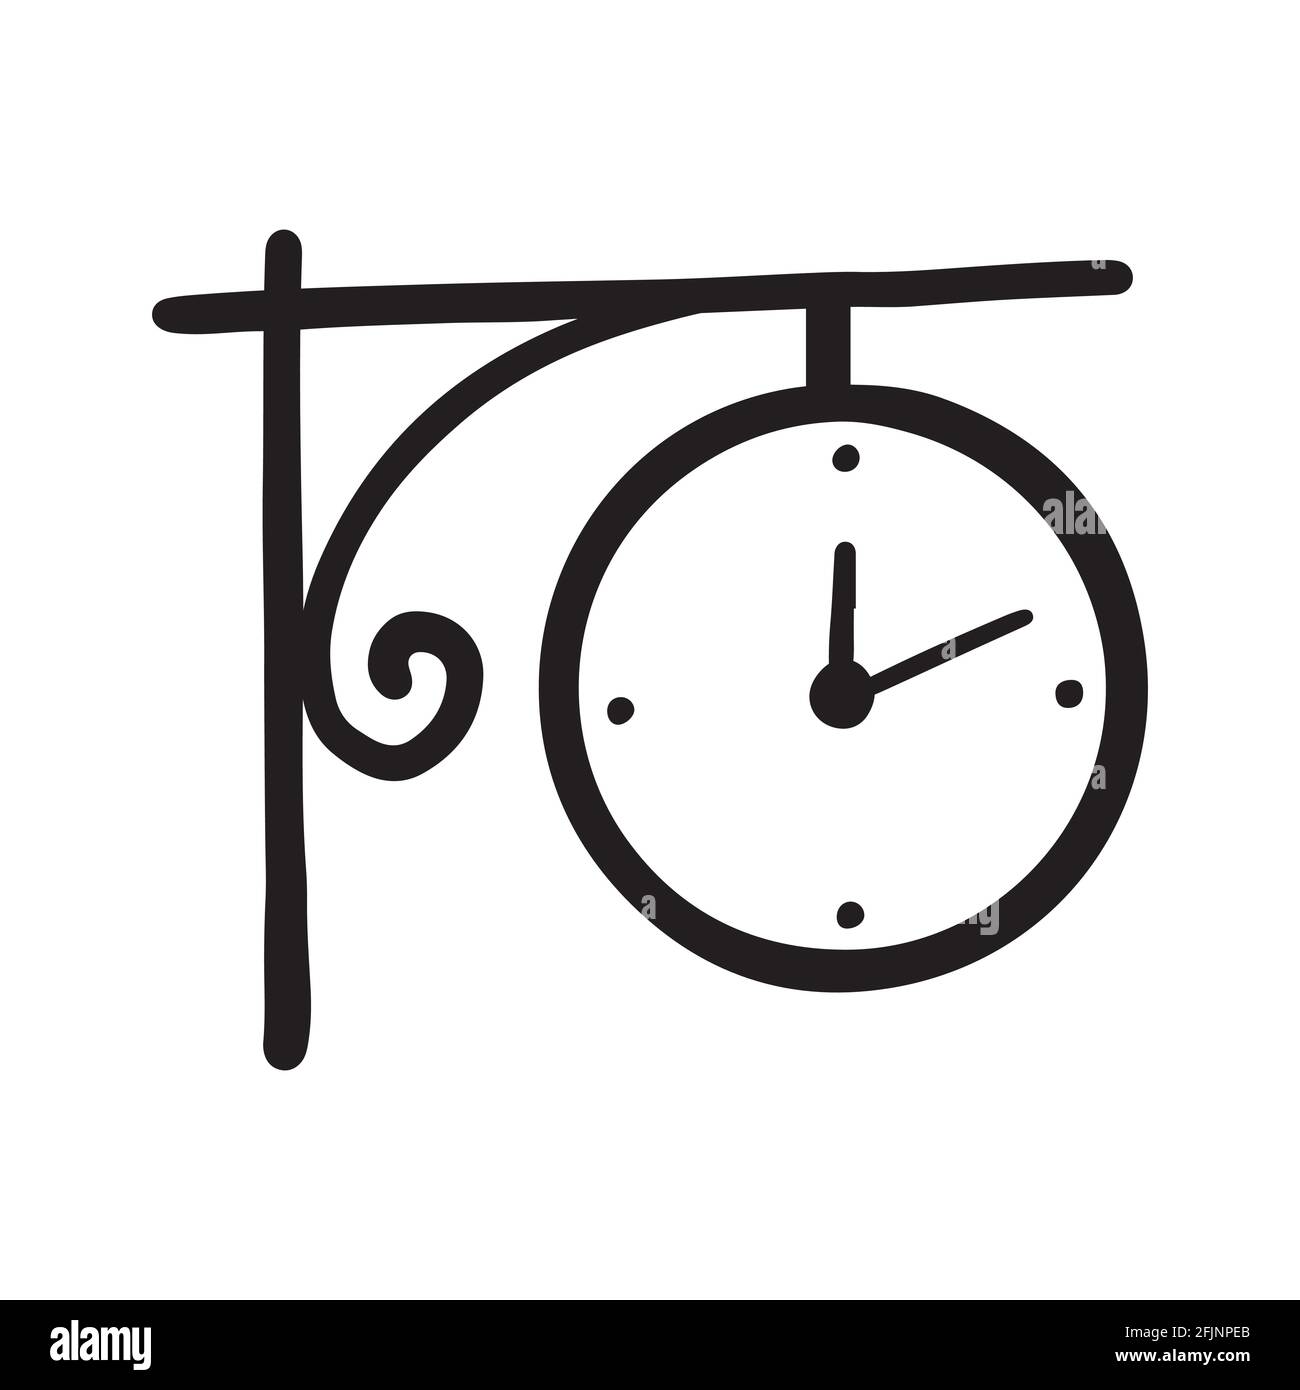 Cerchio semplice da esterno disegnato a mano icona orologio di colore nero. Stile di schizzo Doodle. Concetto di tempo, minuto, scadenza. Orologio con freccia su sfondo bianco Illustrazione Vettoriale